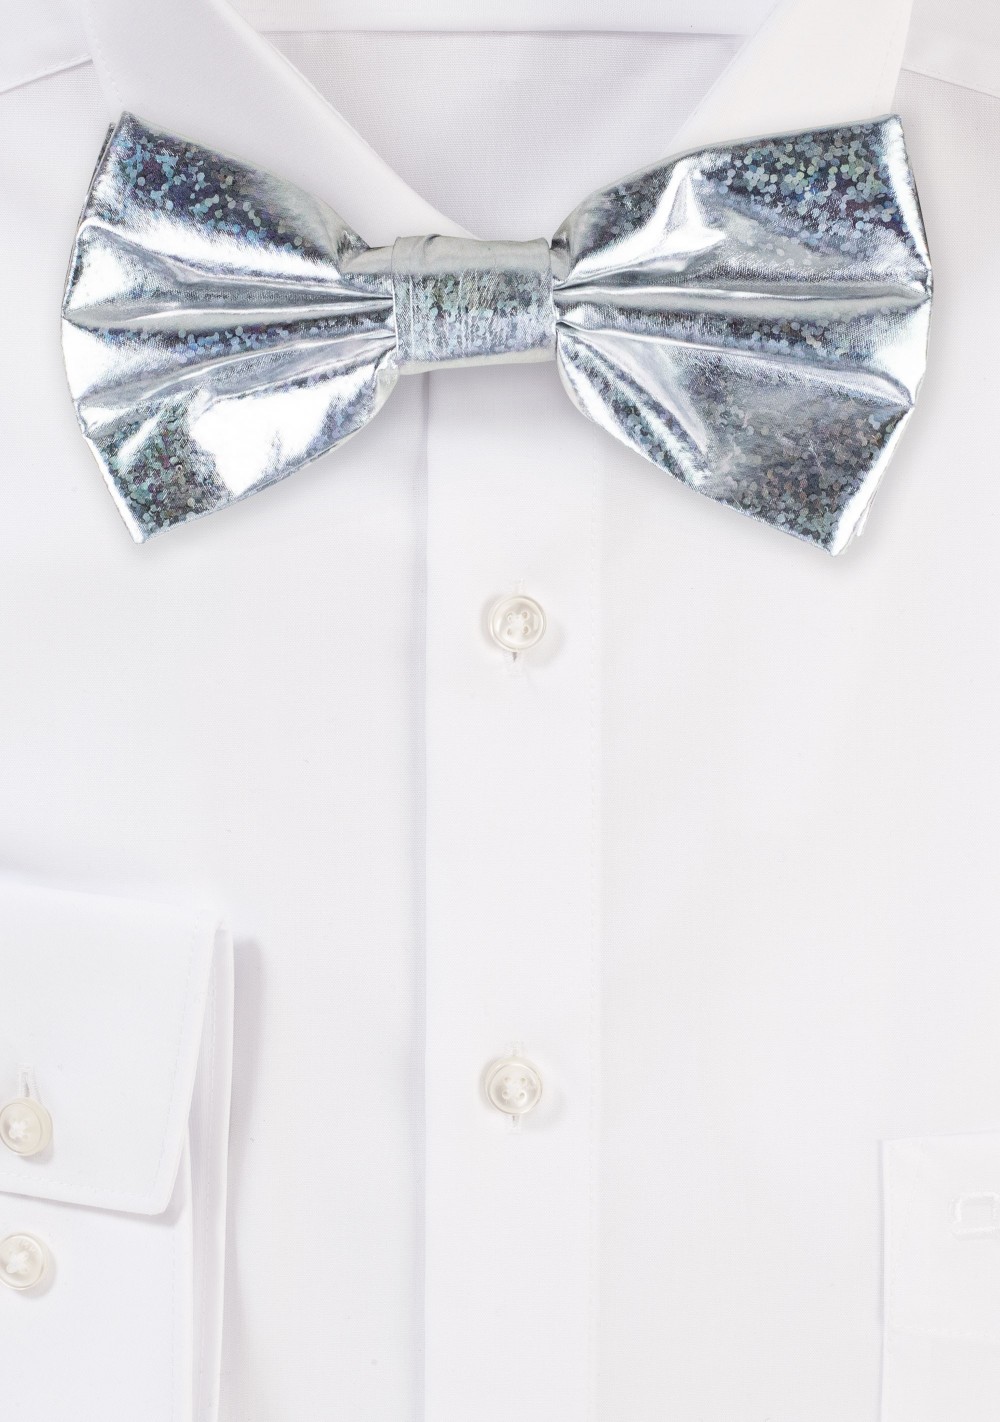 Silver Glitter Bow Tie